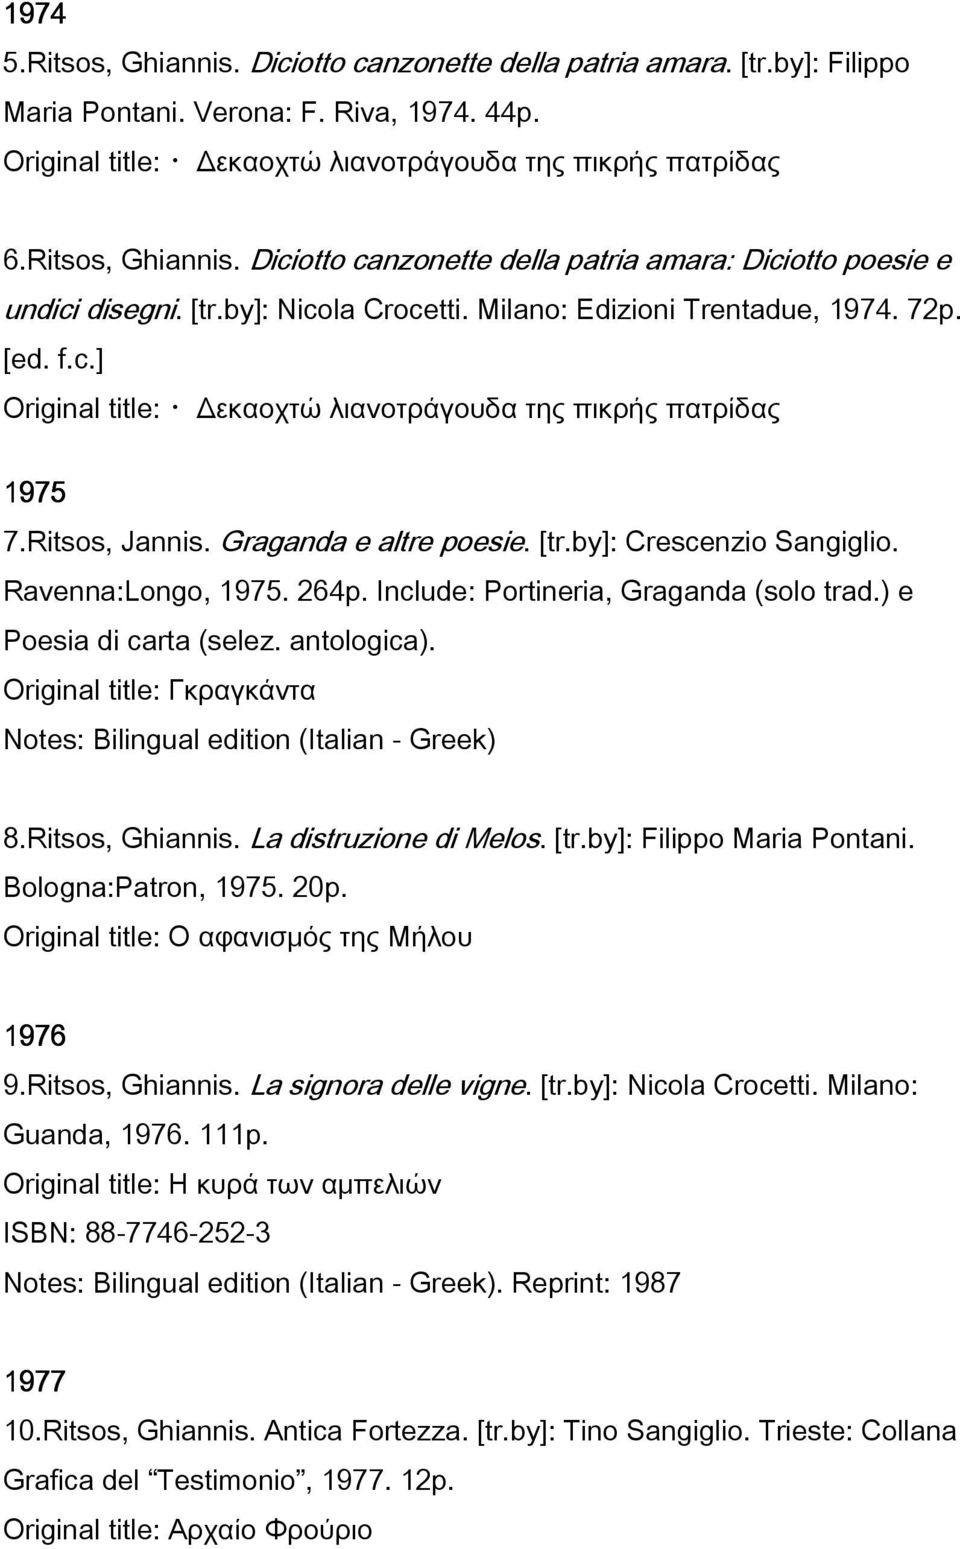 Ritsos, Jannis. Graganda e altre poesie. [tr.by]: Crescenzio Sangiglio. Ravenna:Longo, 1975. 264p. Include: Portineria, Graganda (solo trad.) e Poesia di carta (selez. antologica).